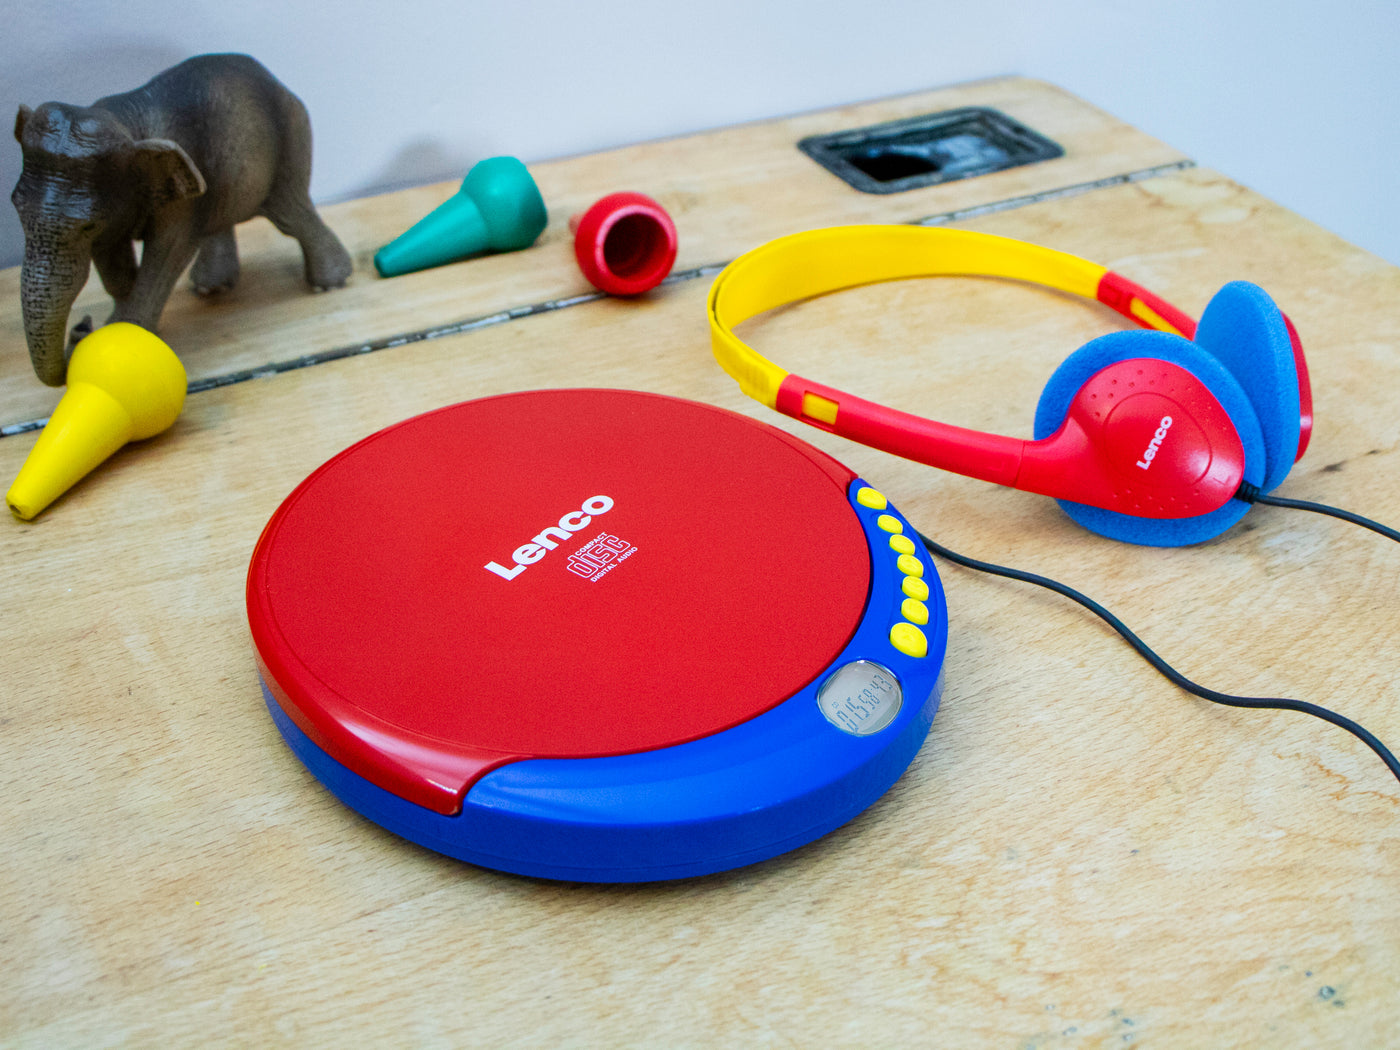 LENCO CD-021KIDS - Draagbare CD speler voor kinderen met hoofdtelefoon, oplaadbare batterijen en ingebouwde geluidsbeperker - Meerkleurig